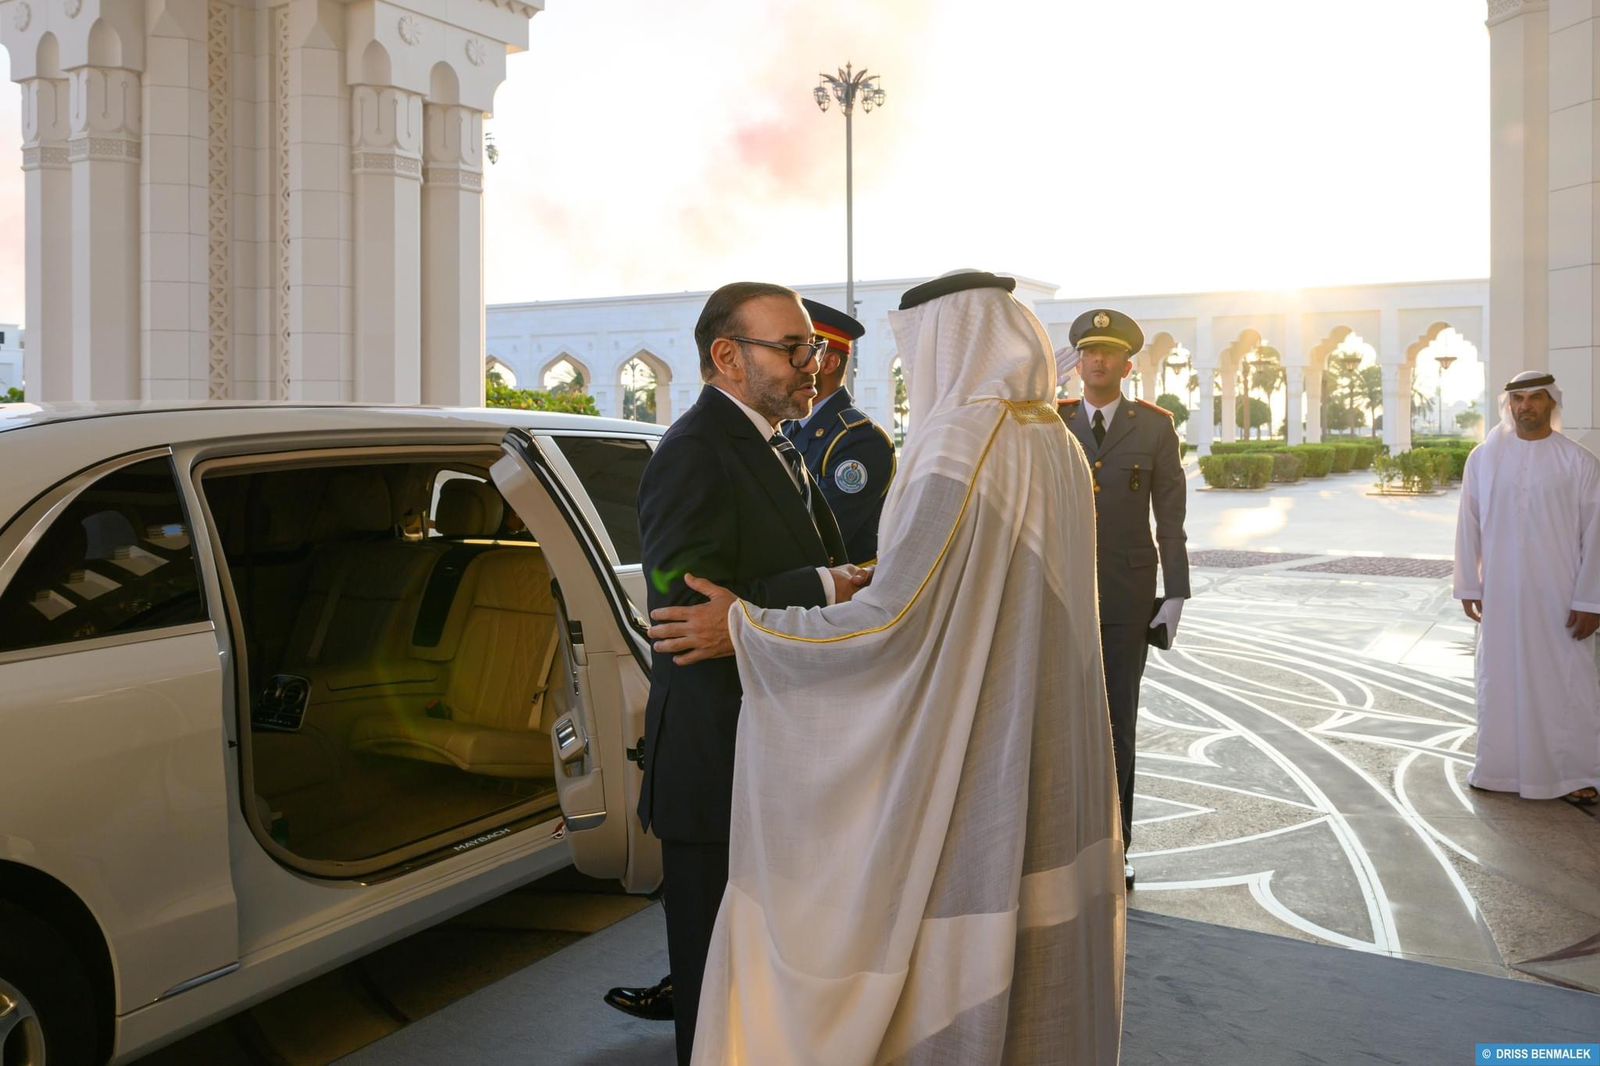 Mohammed Ben Zayed réserve un accueil officiel chaleureux à Sa Majesté le Roi Mohammed VI  (images) 